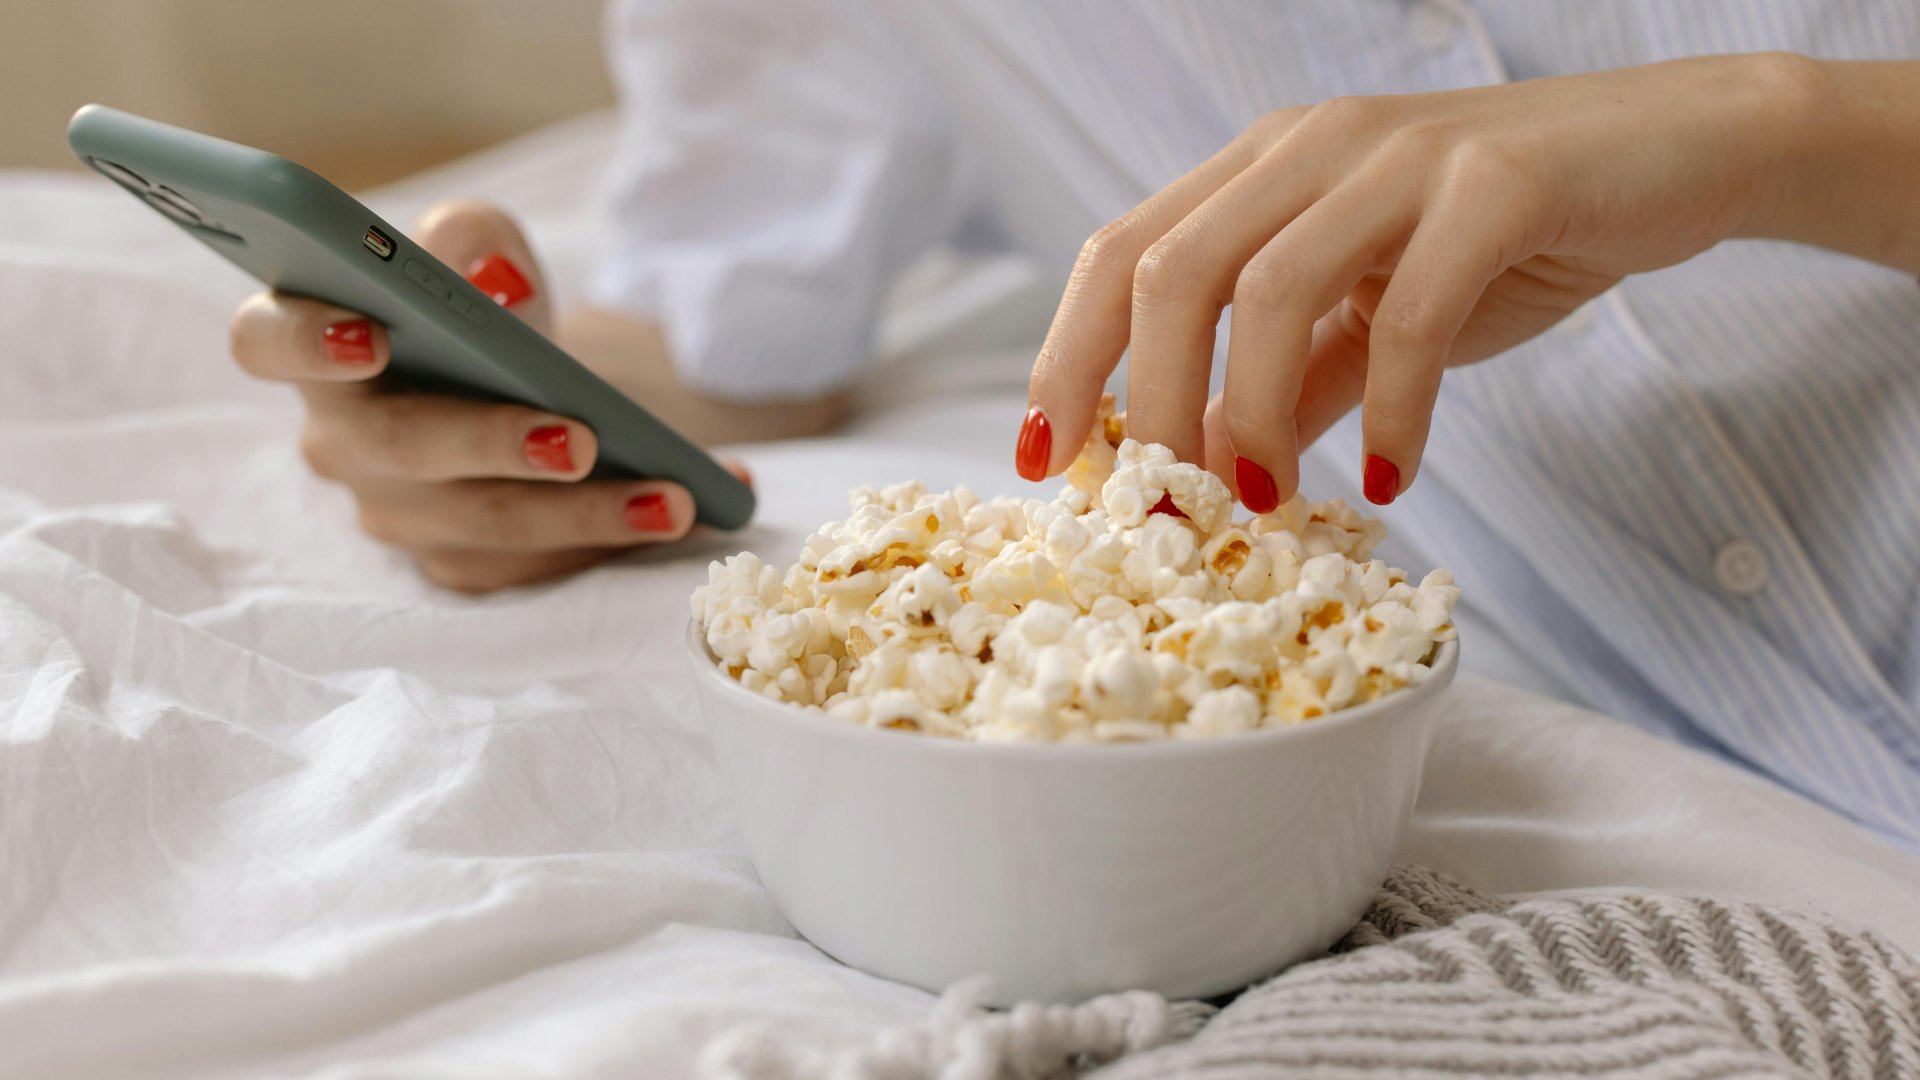 Egy nő az ágyon fekve telefonozik és popcornt eszik